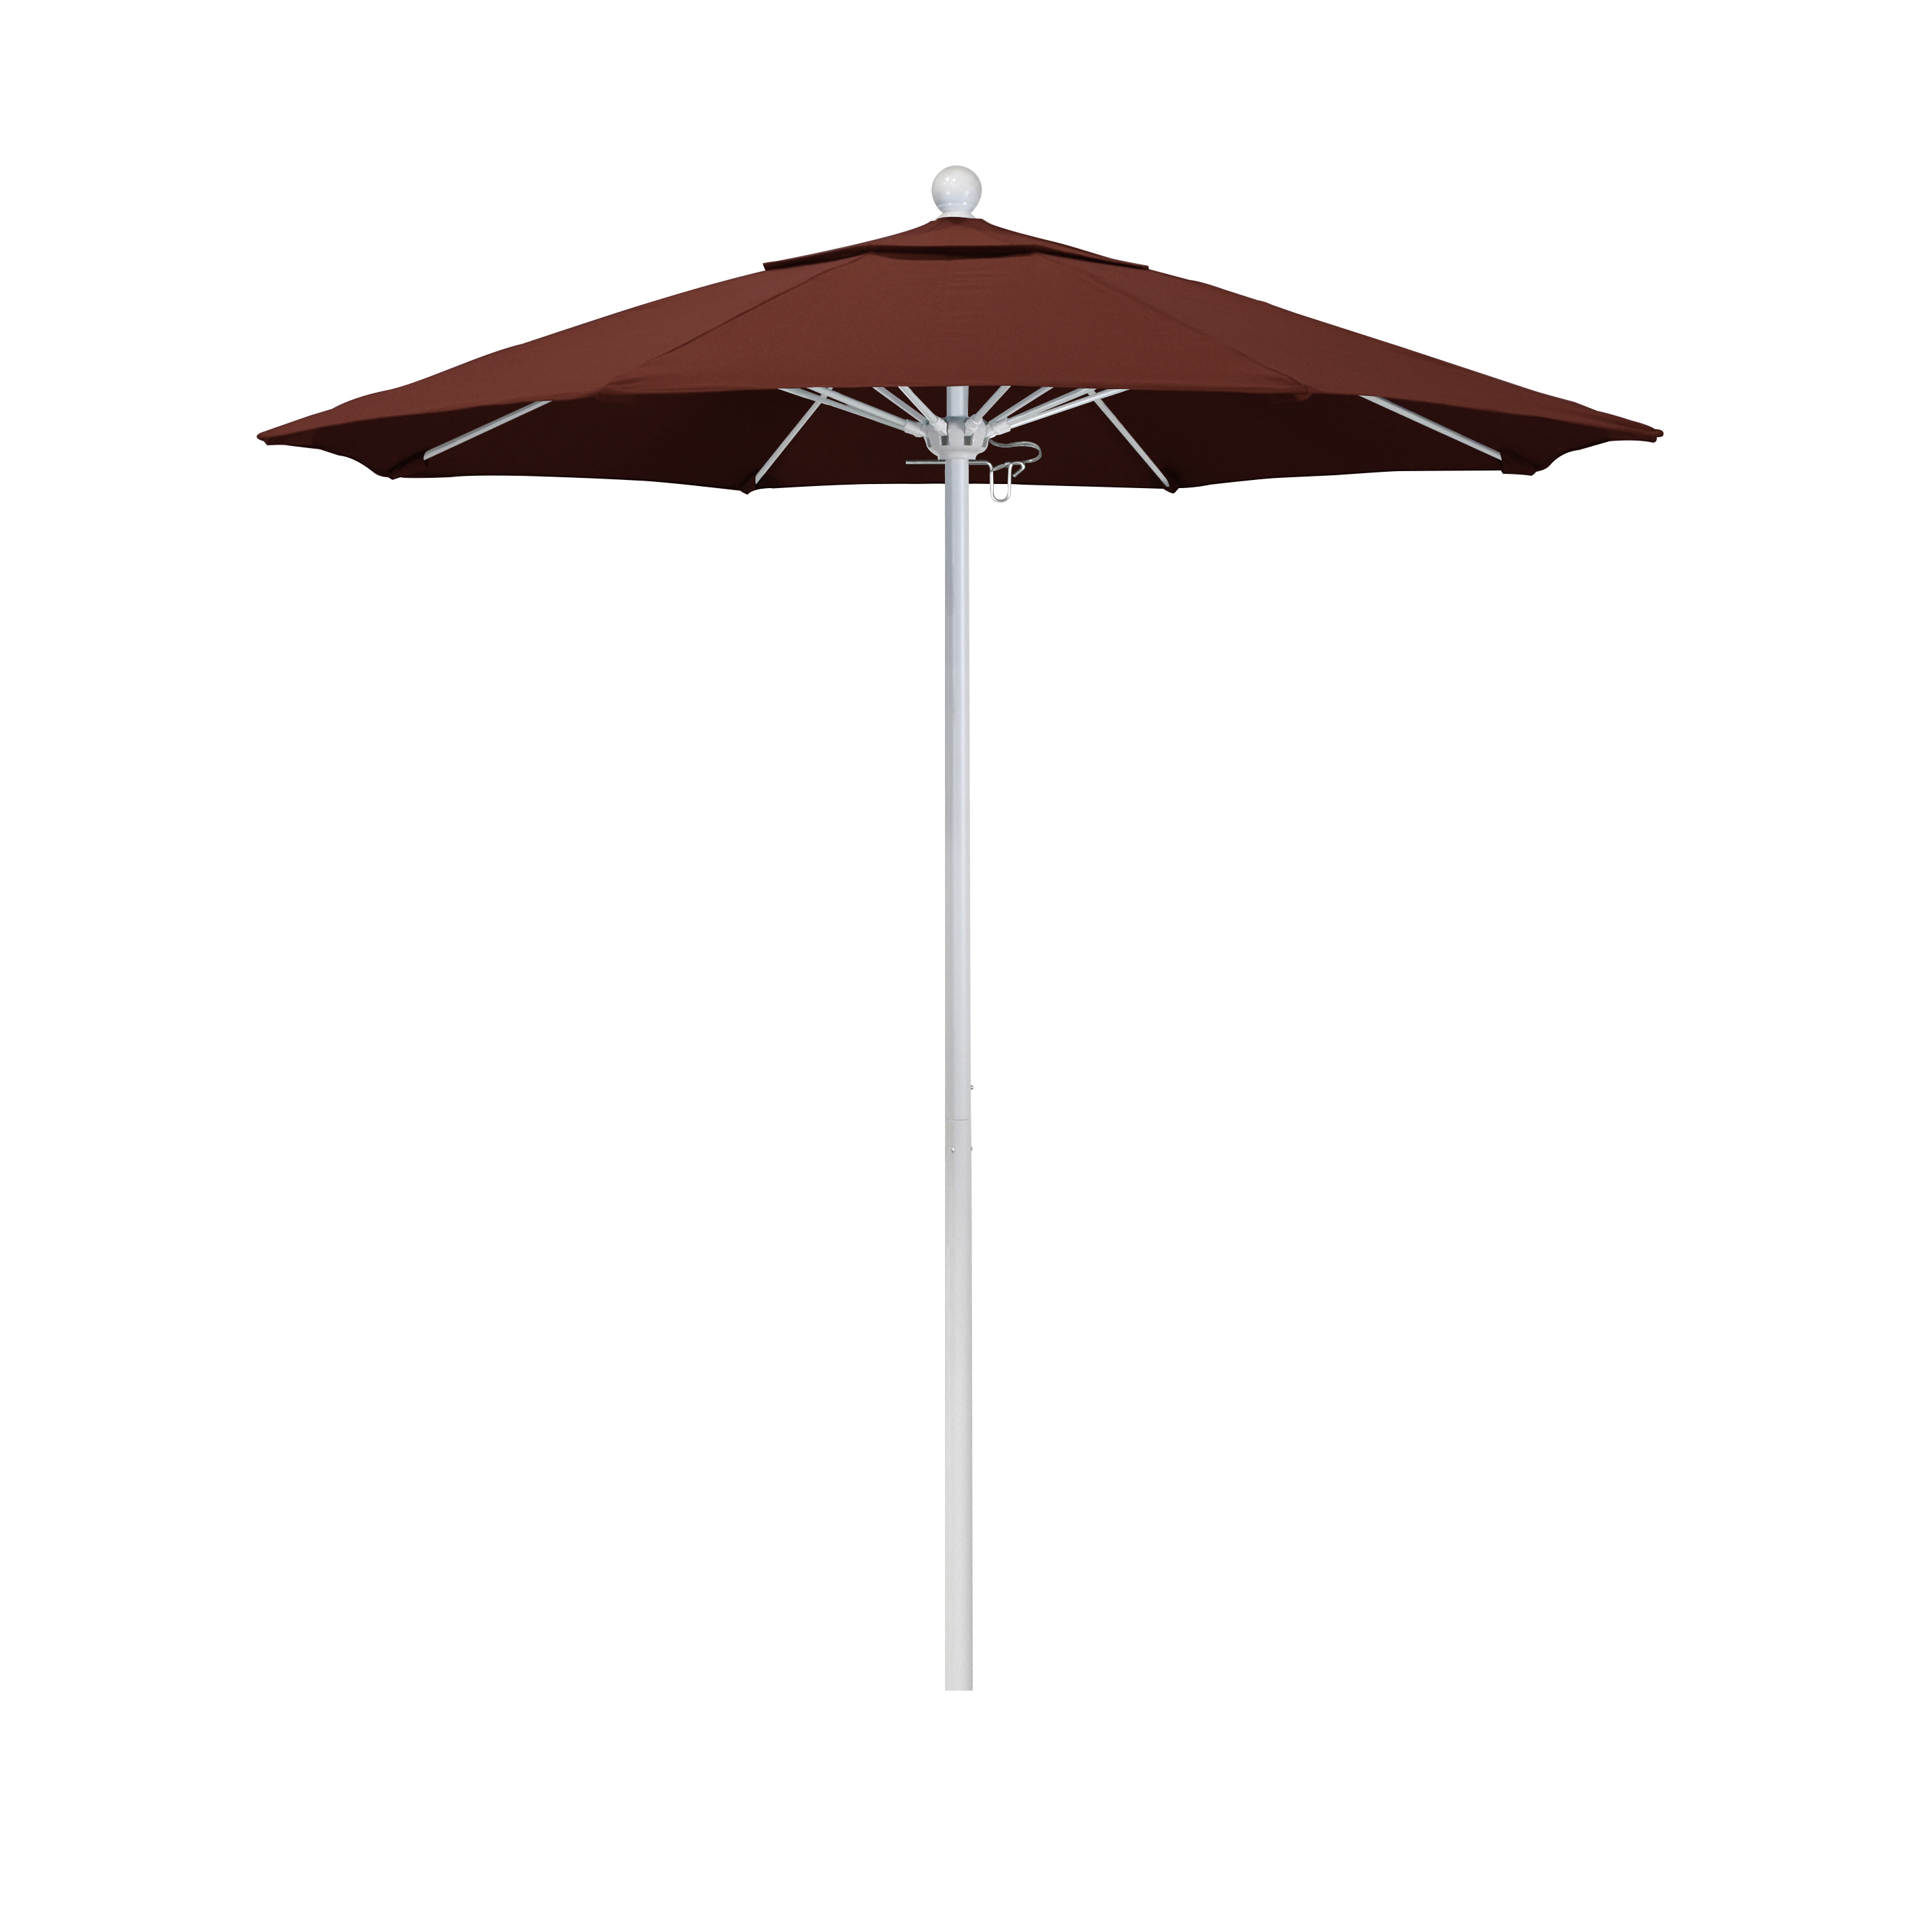 Alto758170-5407 7.5 Ft. Fiberglass Pulley Open Market Umbrella - Matted White And Sunbrella-henna